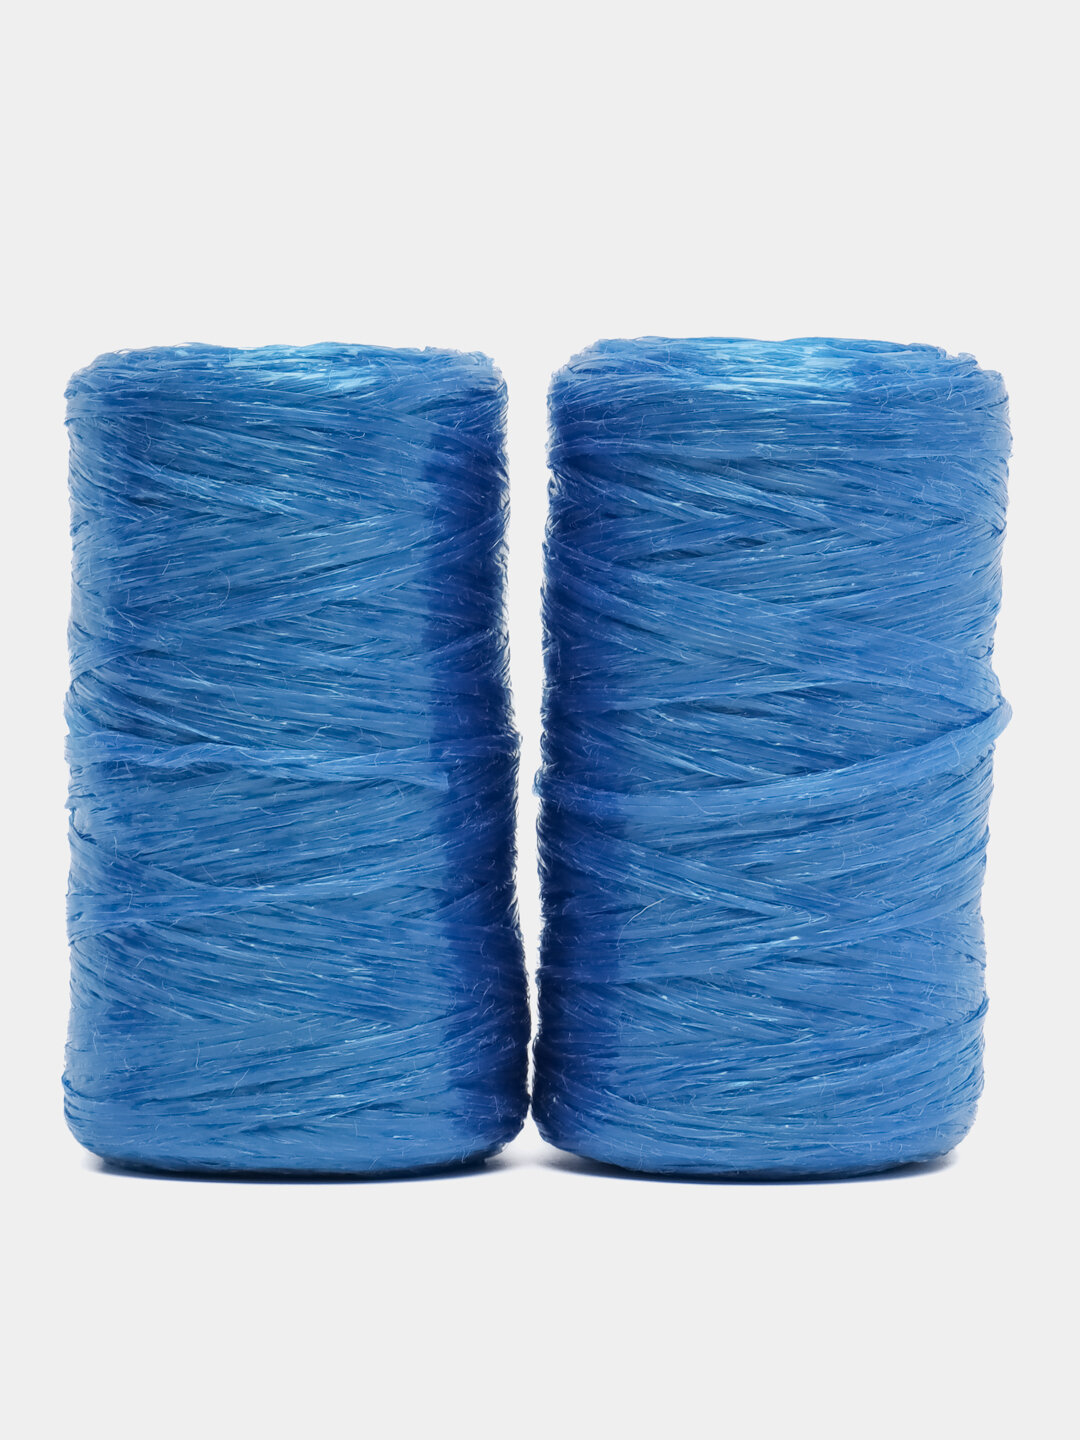 Пряжа Для вязания мочалок, Цвет Синий